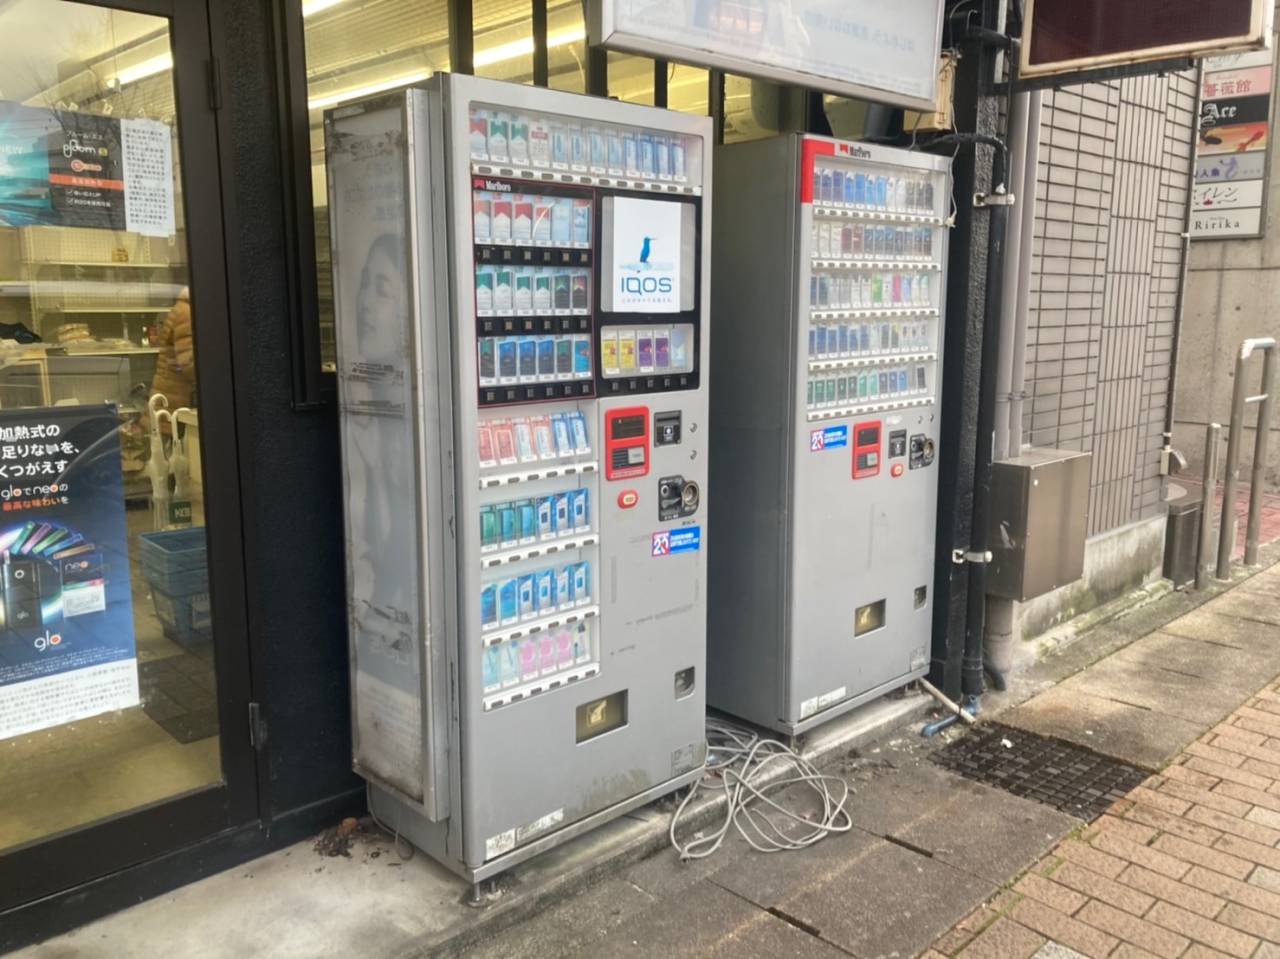 岐阜市内にて、タバコの自動販売機2機の撤去のご依頼でした